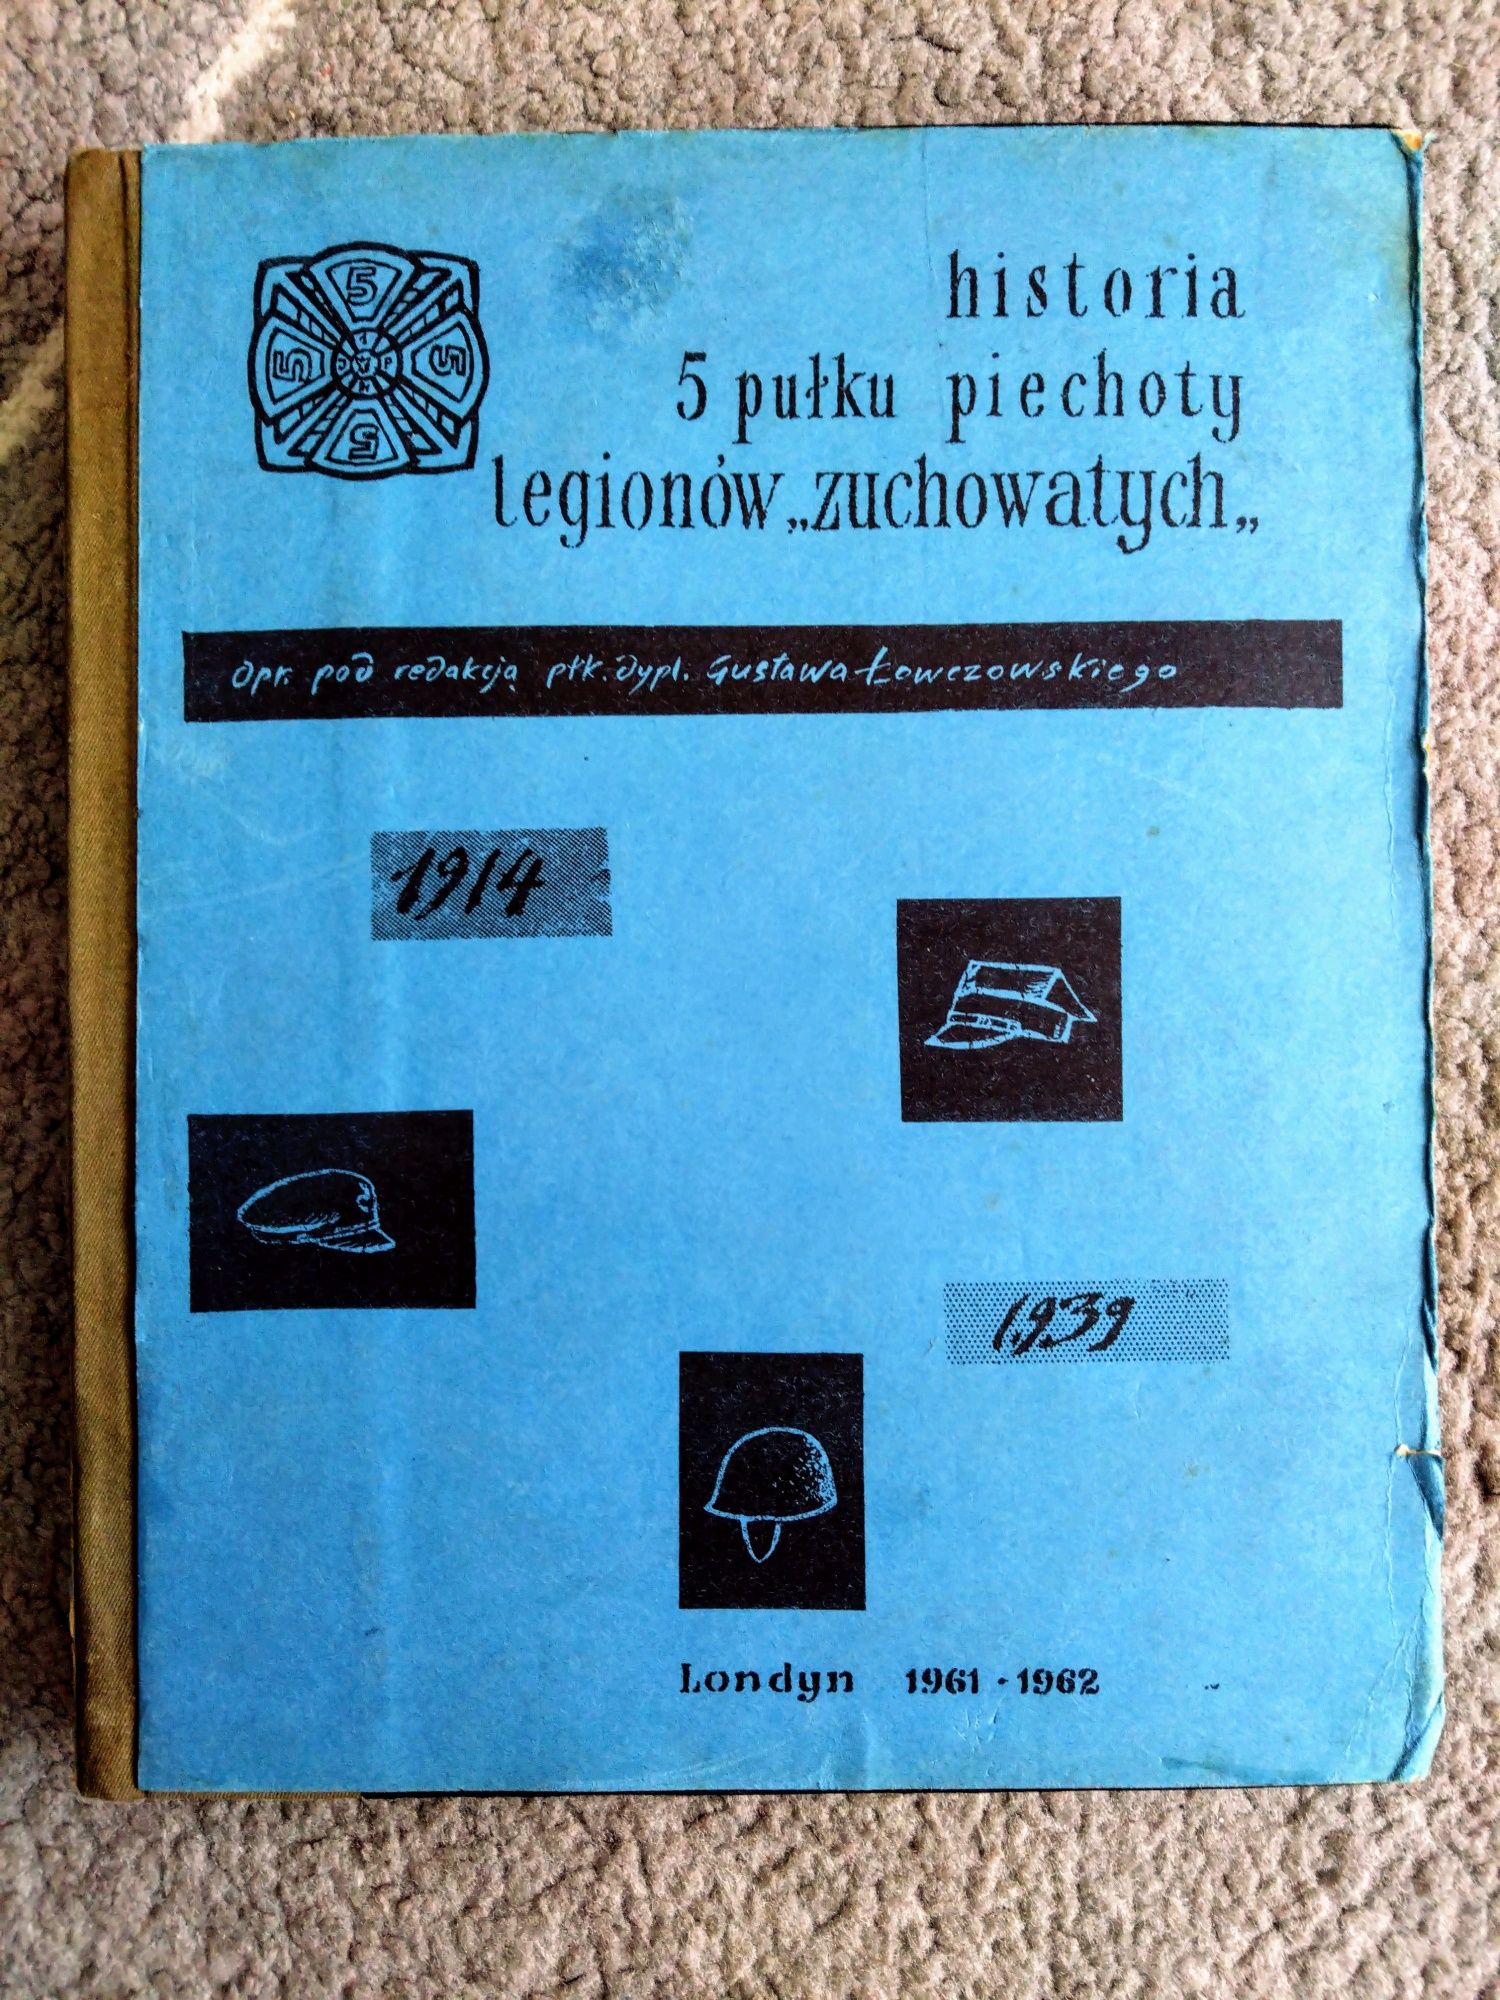 Historia 5 pułku Piechoty legionów "Zuchowatych" maszynopis 1964.